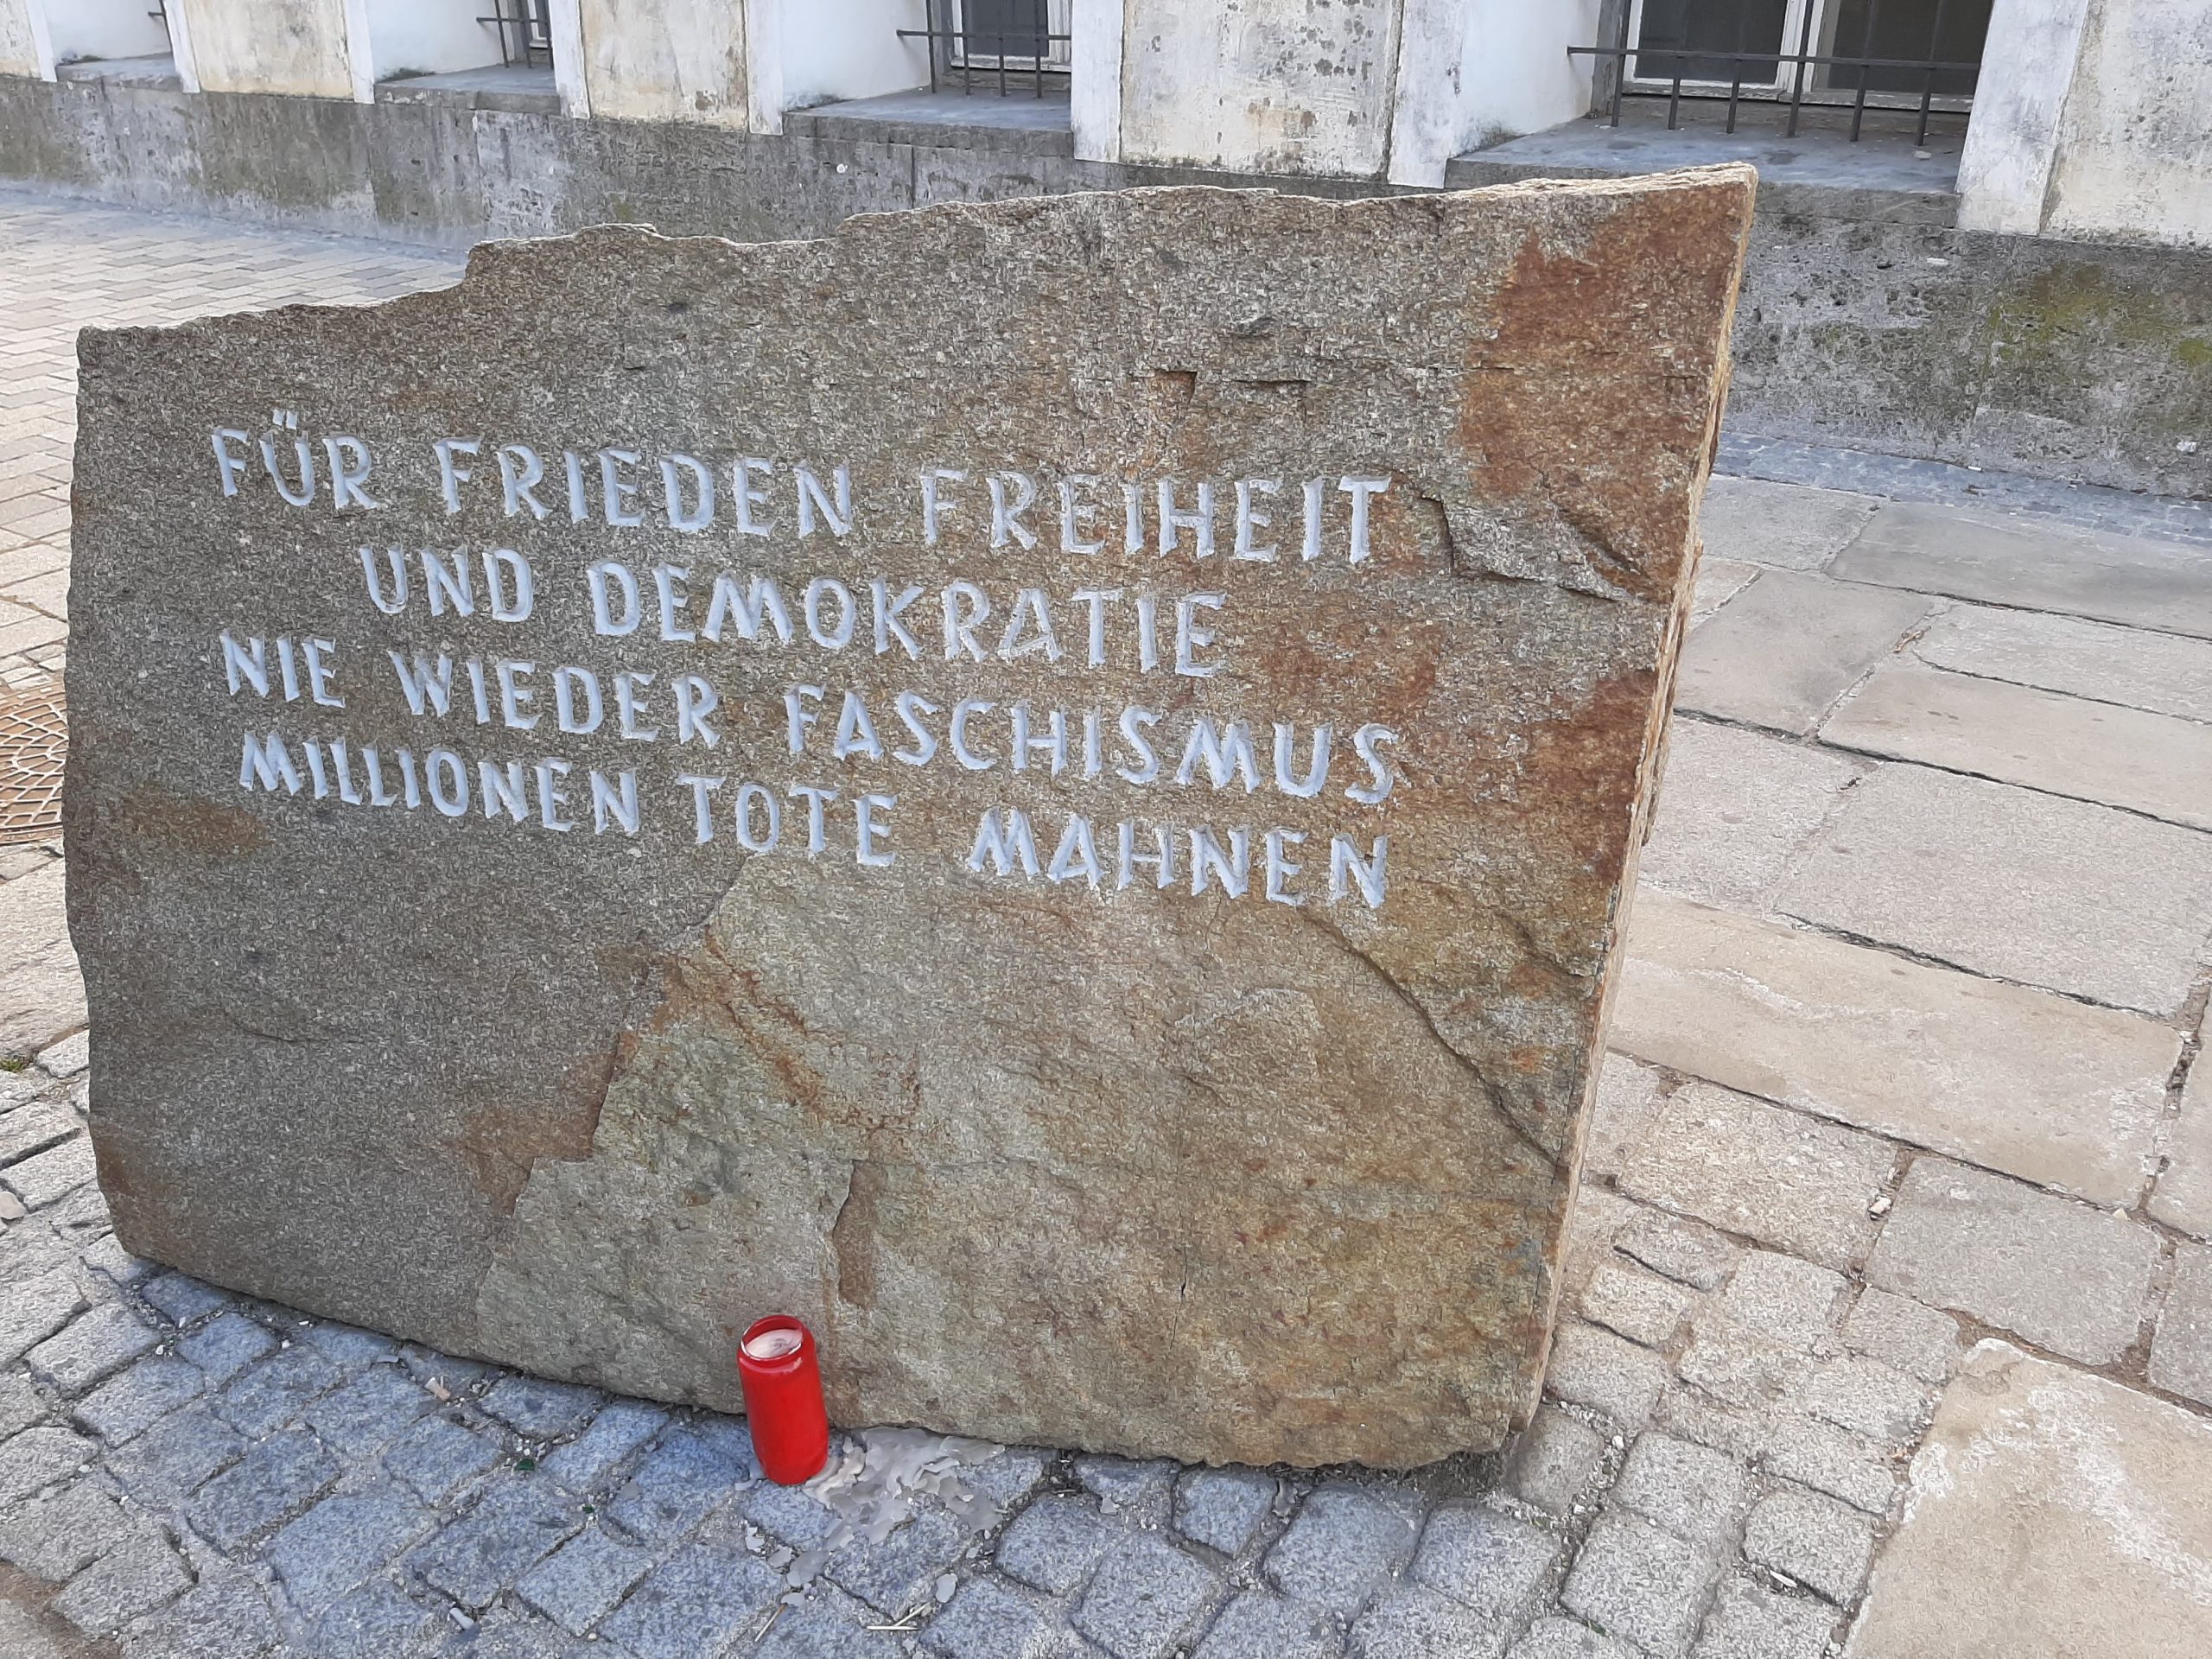 Kamen iz logora Mathauzen ostaje na istom mestu, ispred Hitlerove rodne kuće u Braunau na Inu: “Za mir, slobodu i demokratiju – nikada više fašizam – milioni mrtvih upozoravaju" (Foto: R. Nikolić)